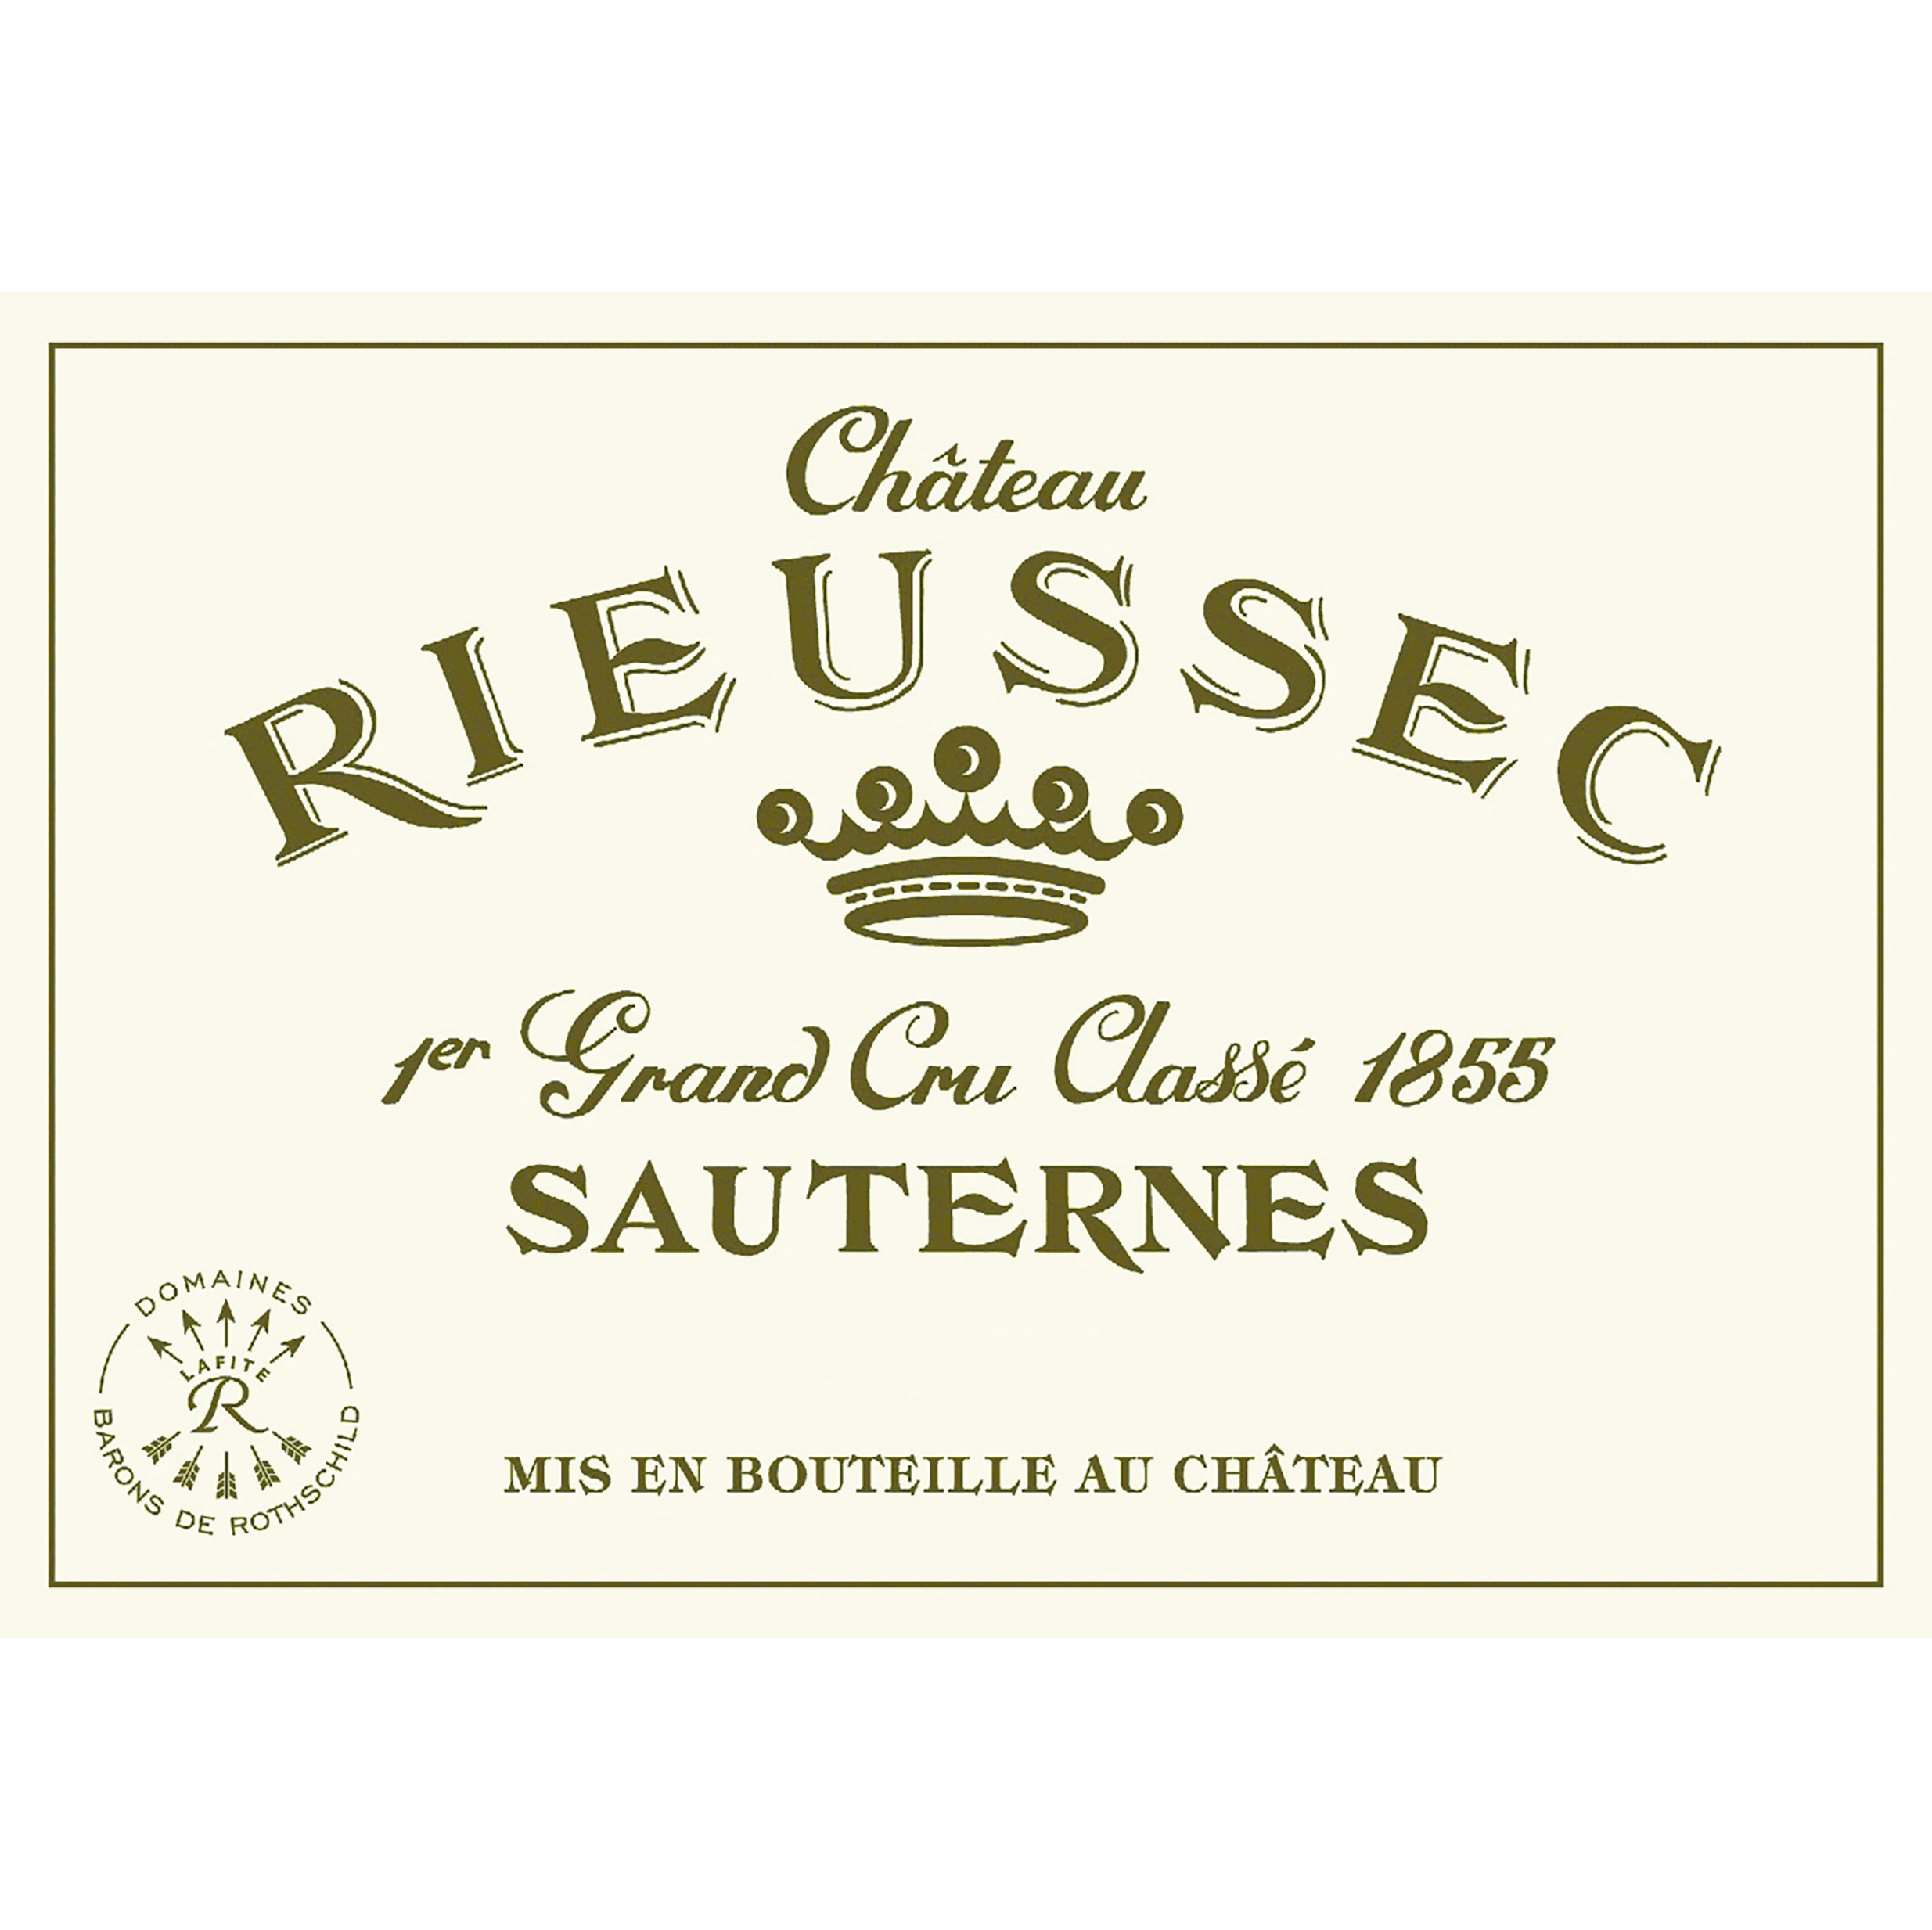 Chateau RIEUSSEC 拉菲莱斯古堡酒庄 拉菲莱斯古堡酒庄苏玳甜酒 2009年